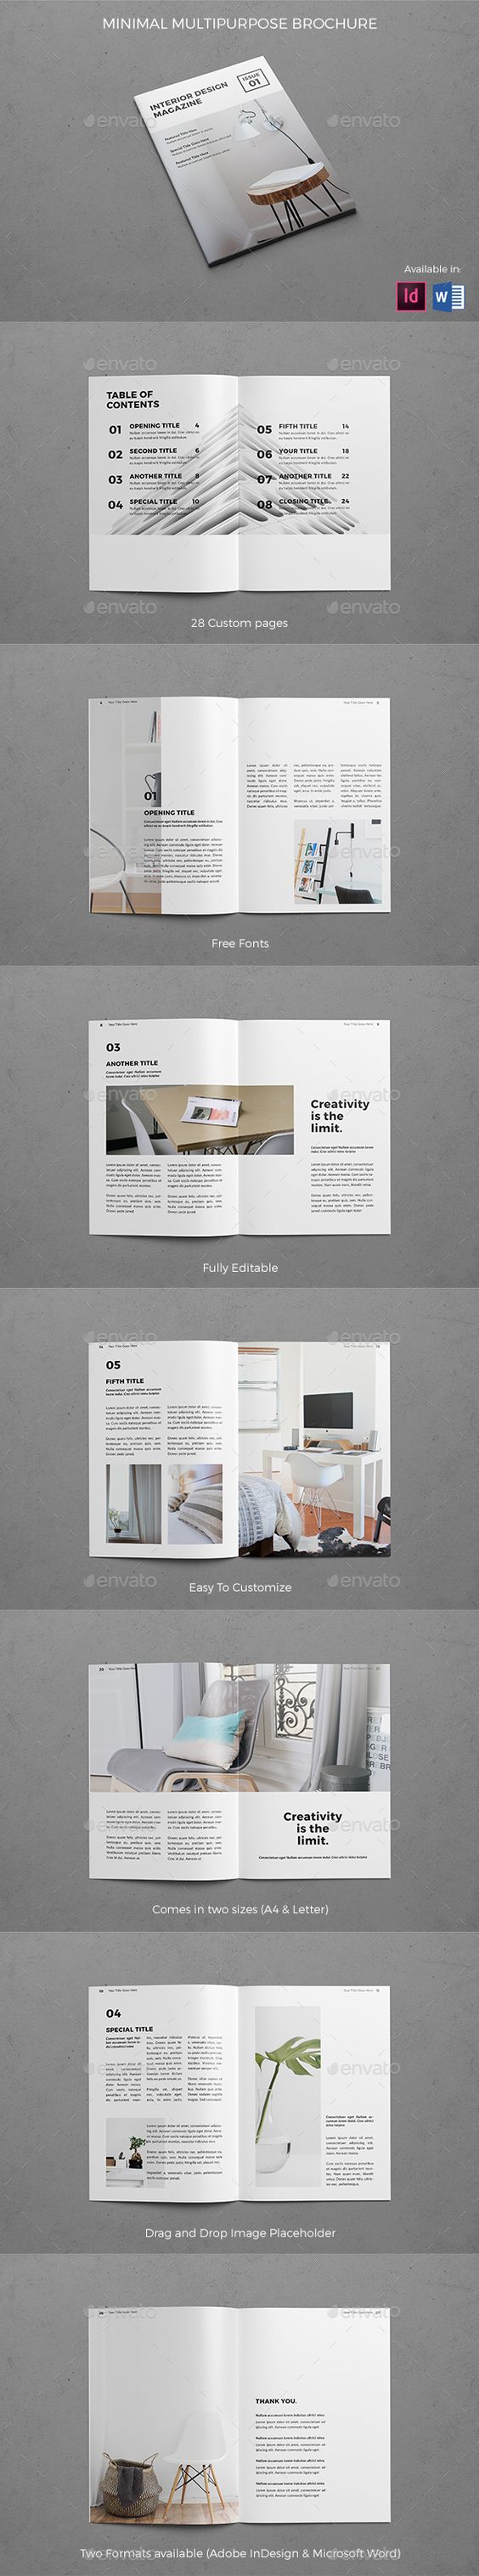 现代时尚的建筑家居宣传册模板 Modern Architecture Brochure插图